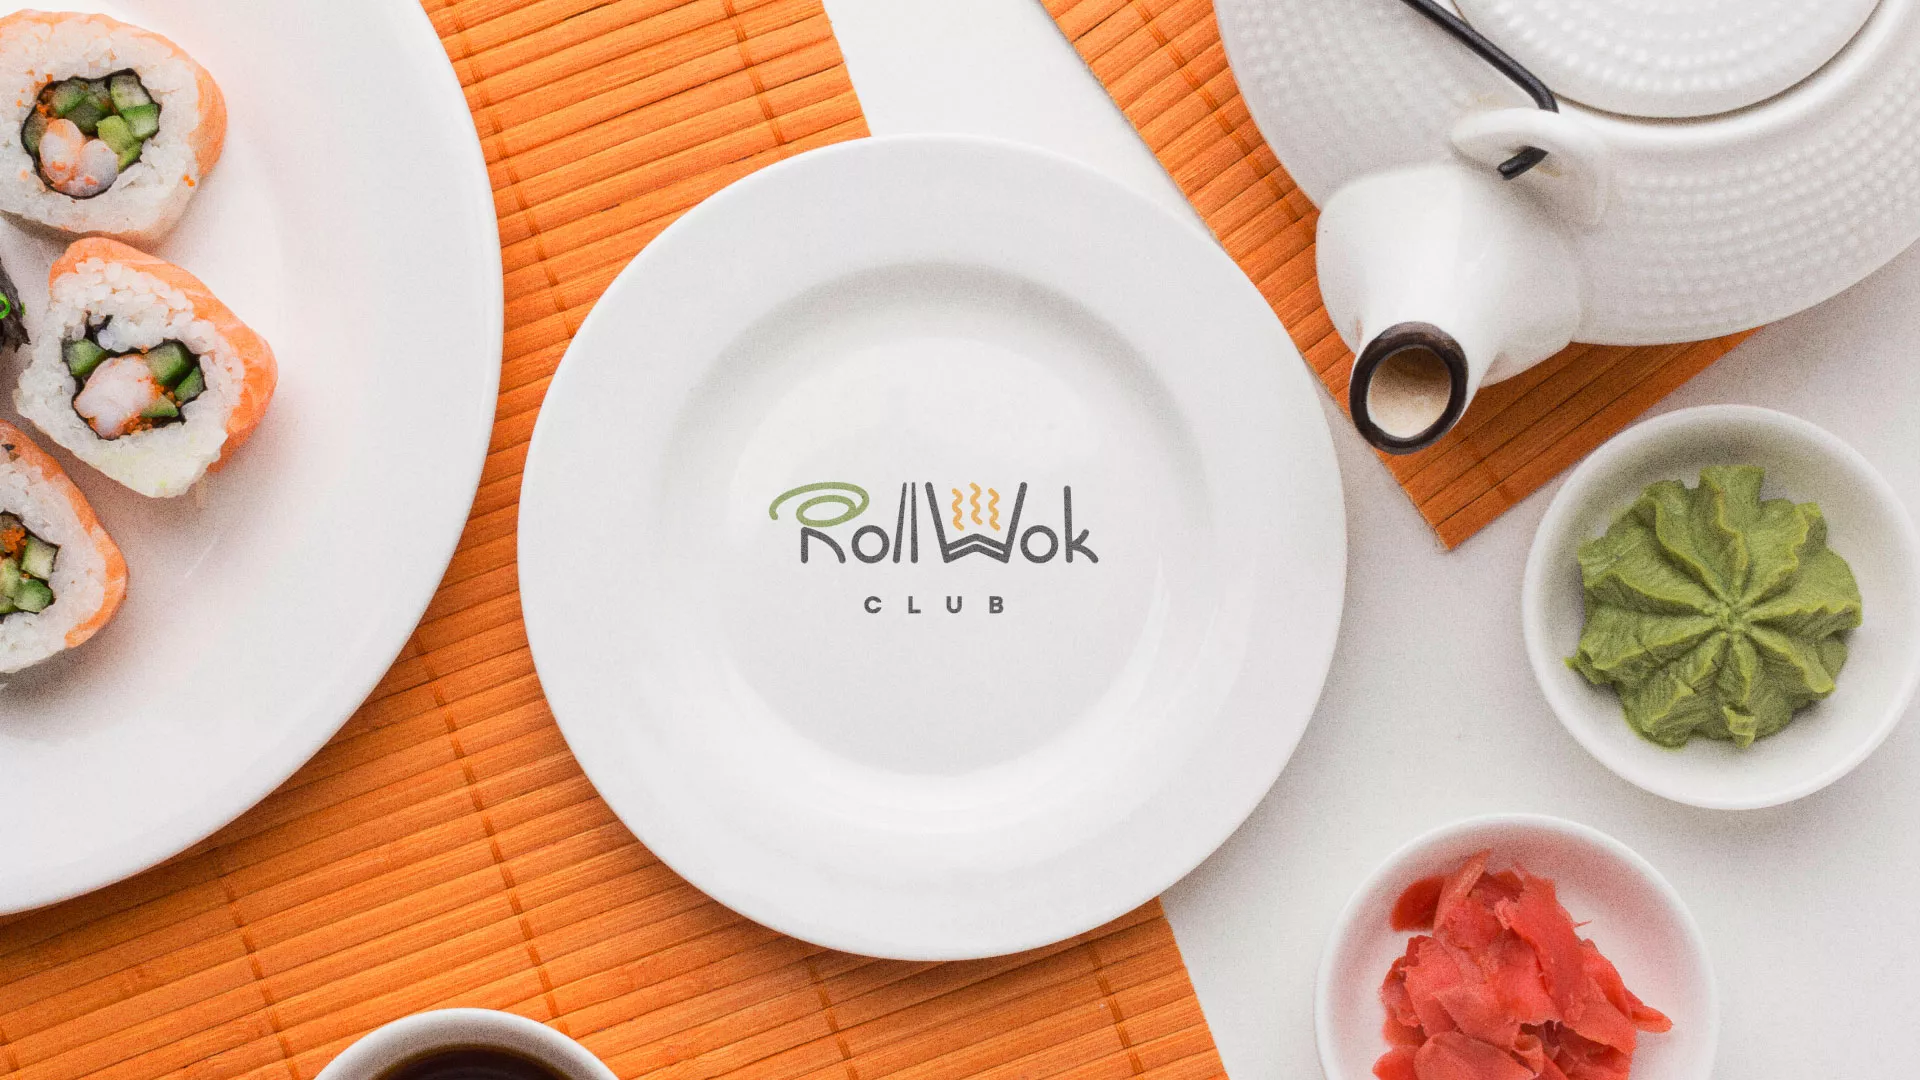 Разработка логотипа и фирменного стиля суши-бара «Roll Wok Club» в Высоковске